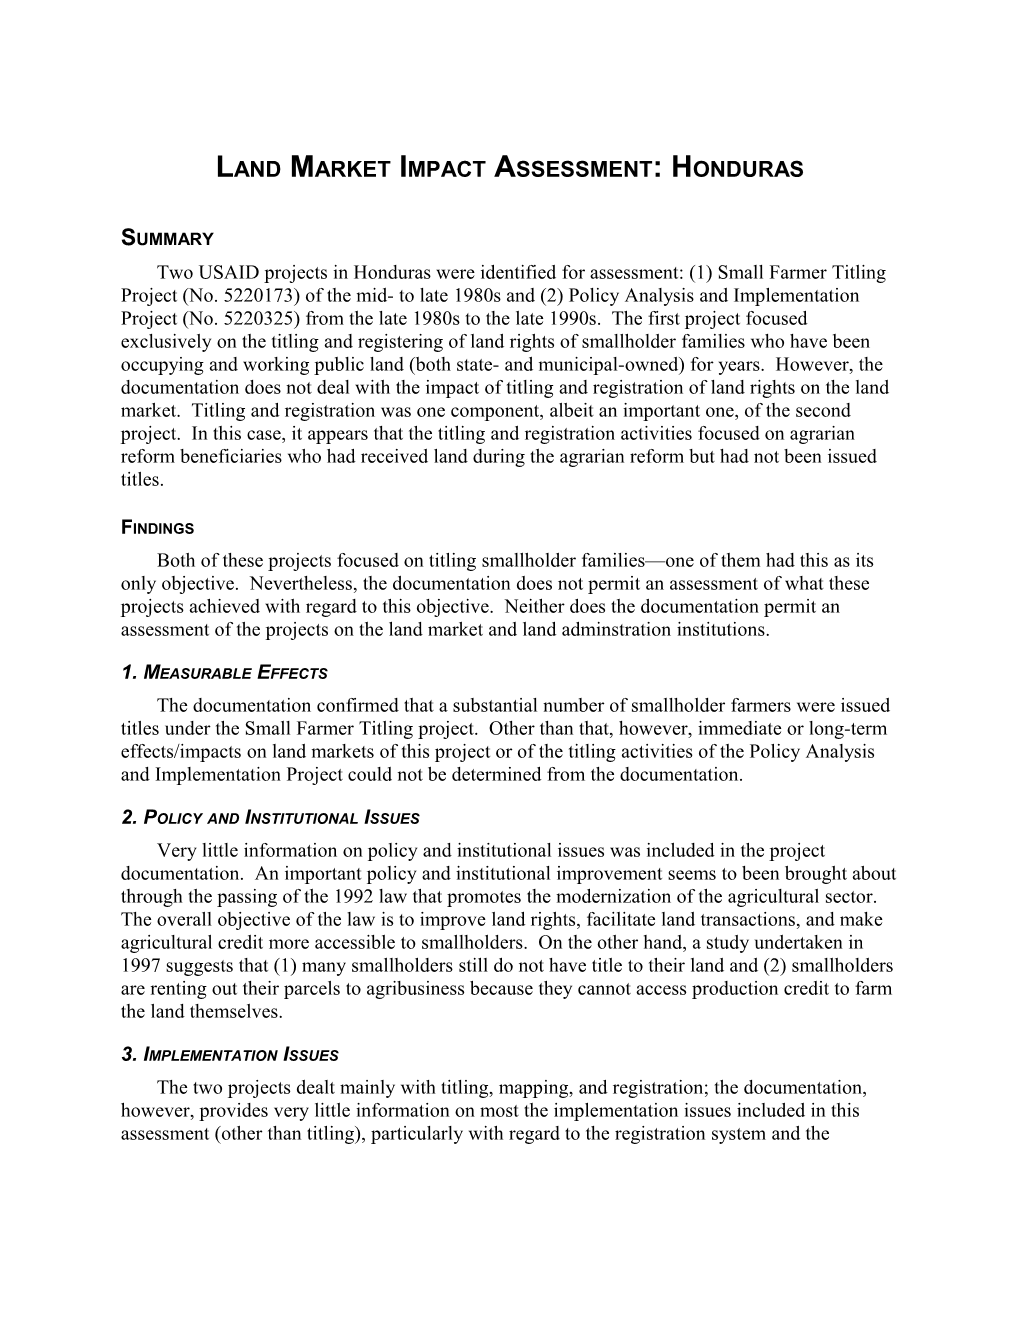 Land Market Impact Assessment: Honduras